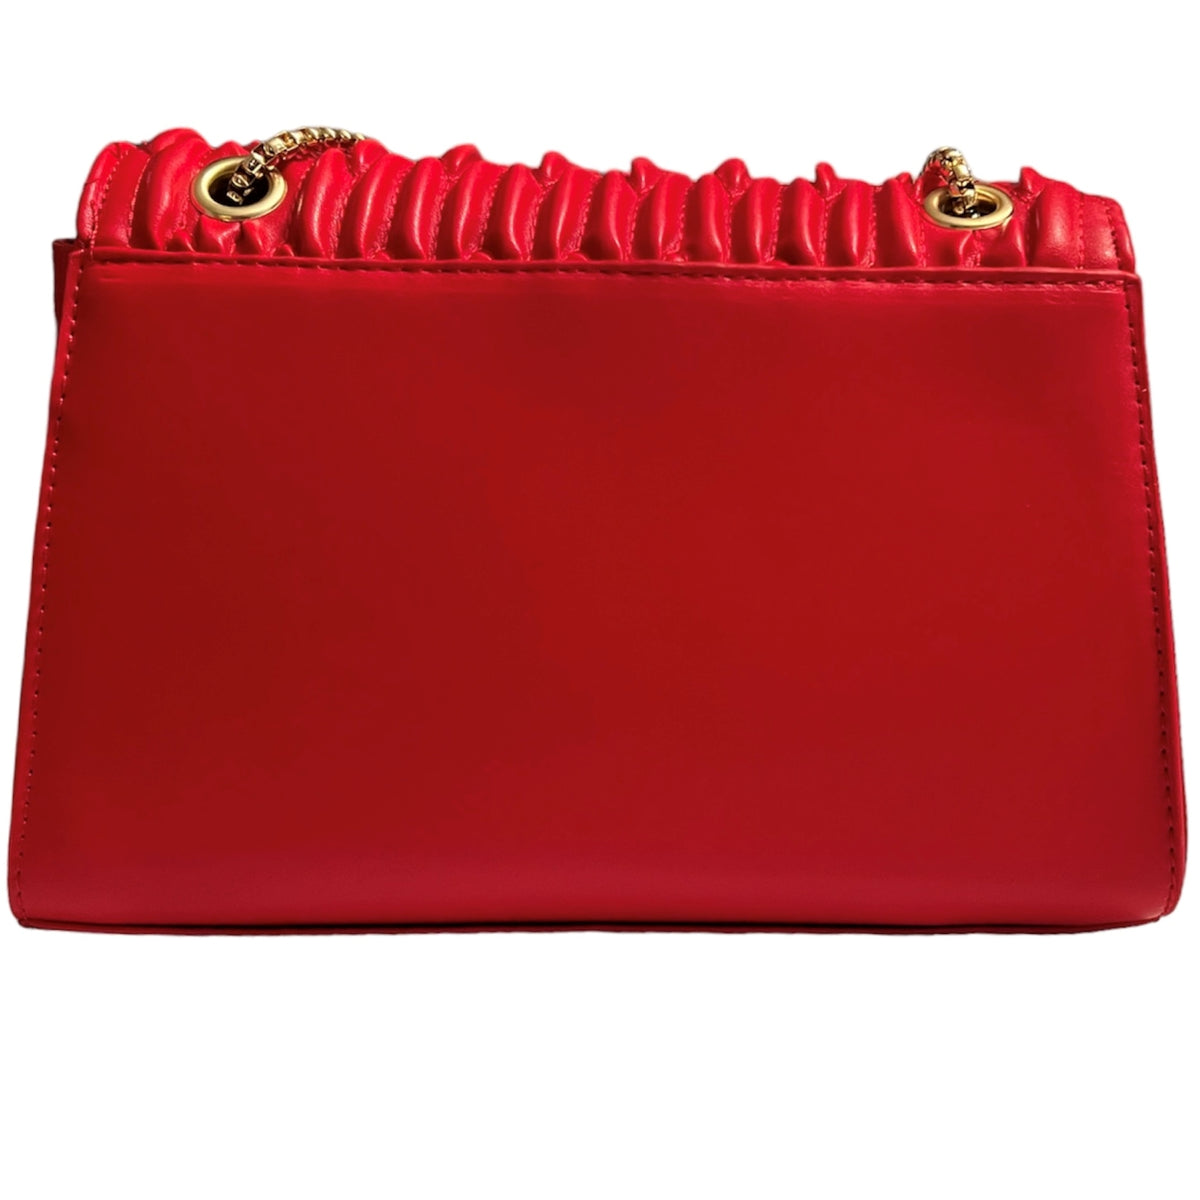 Ce sac à main Lina rouge est conçu avec une structure rigide pour une meilleure résistance et durabilité. Idéal pour protéger vos affaires tout en ajoutant une touche d'élégance à votre tenue. Le choix parfait pour les femmes qui cherchent un sac à la fois pratique et chic.